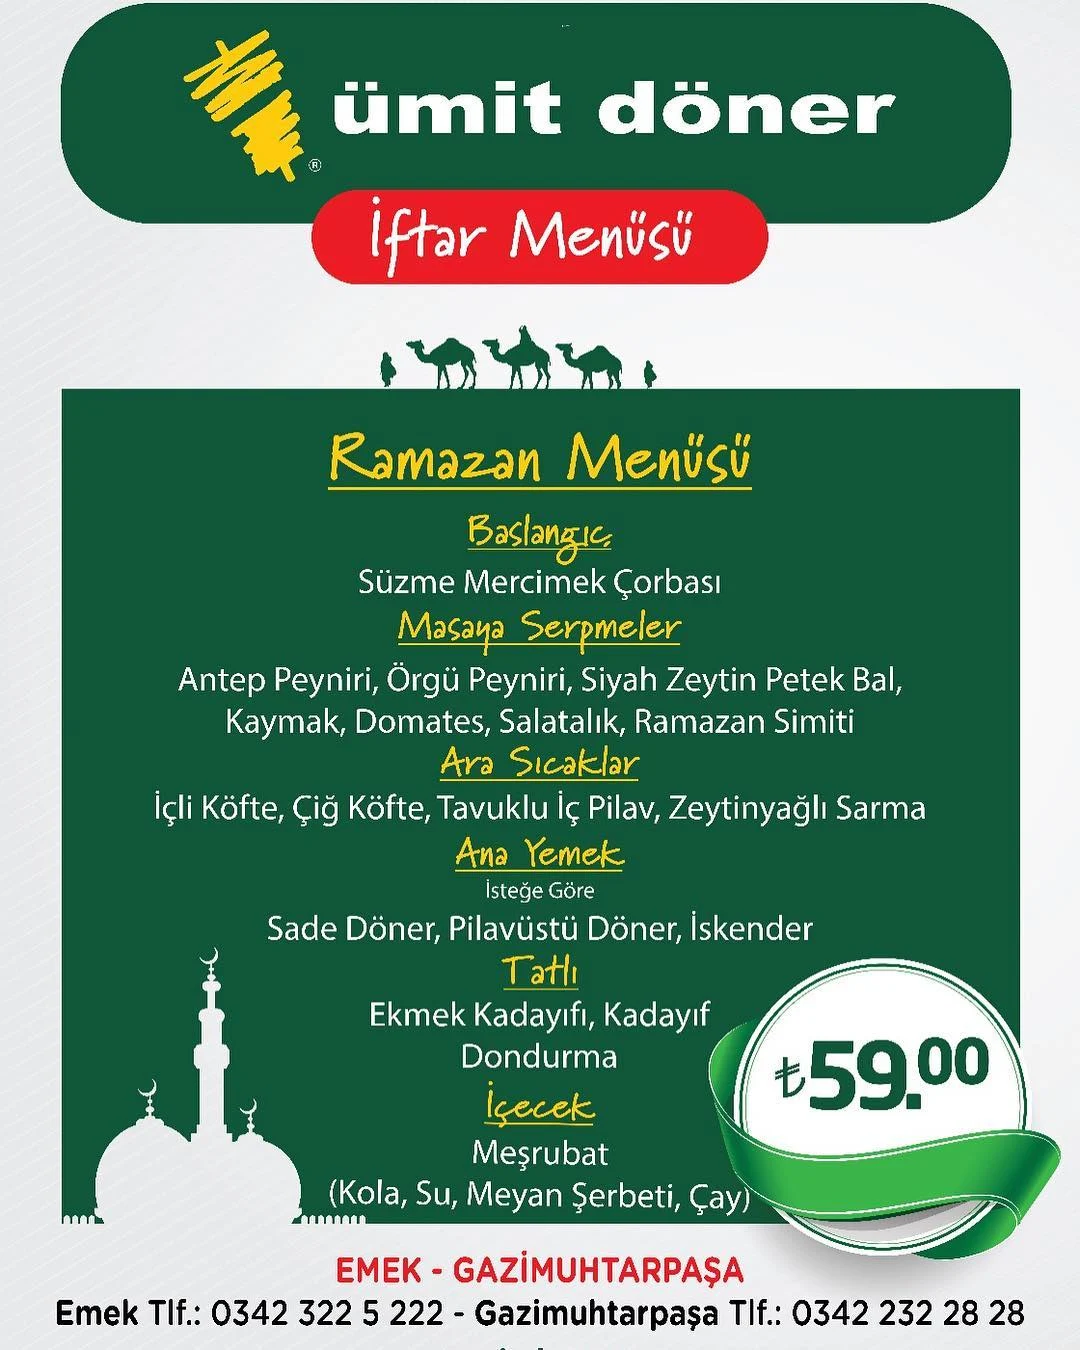 ümit döner gaziantep iftar menusu fiyatlari gaziantep iftar mekanları gaziantep iftar menüsü ve fiyatları